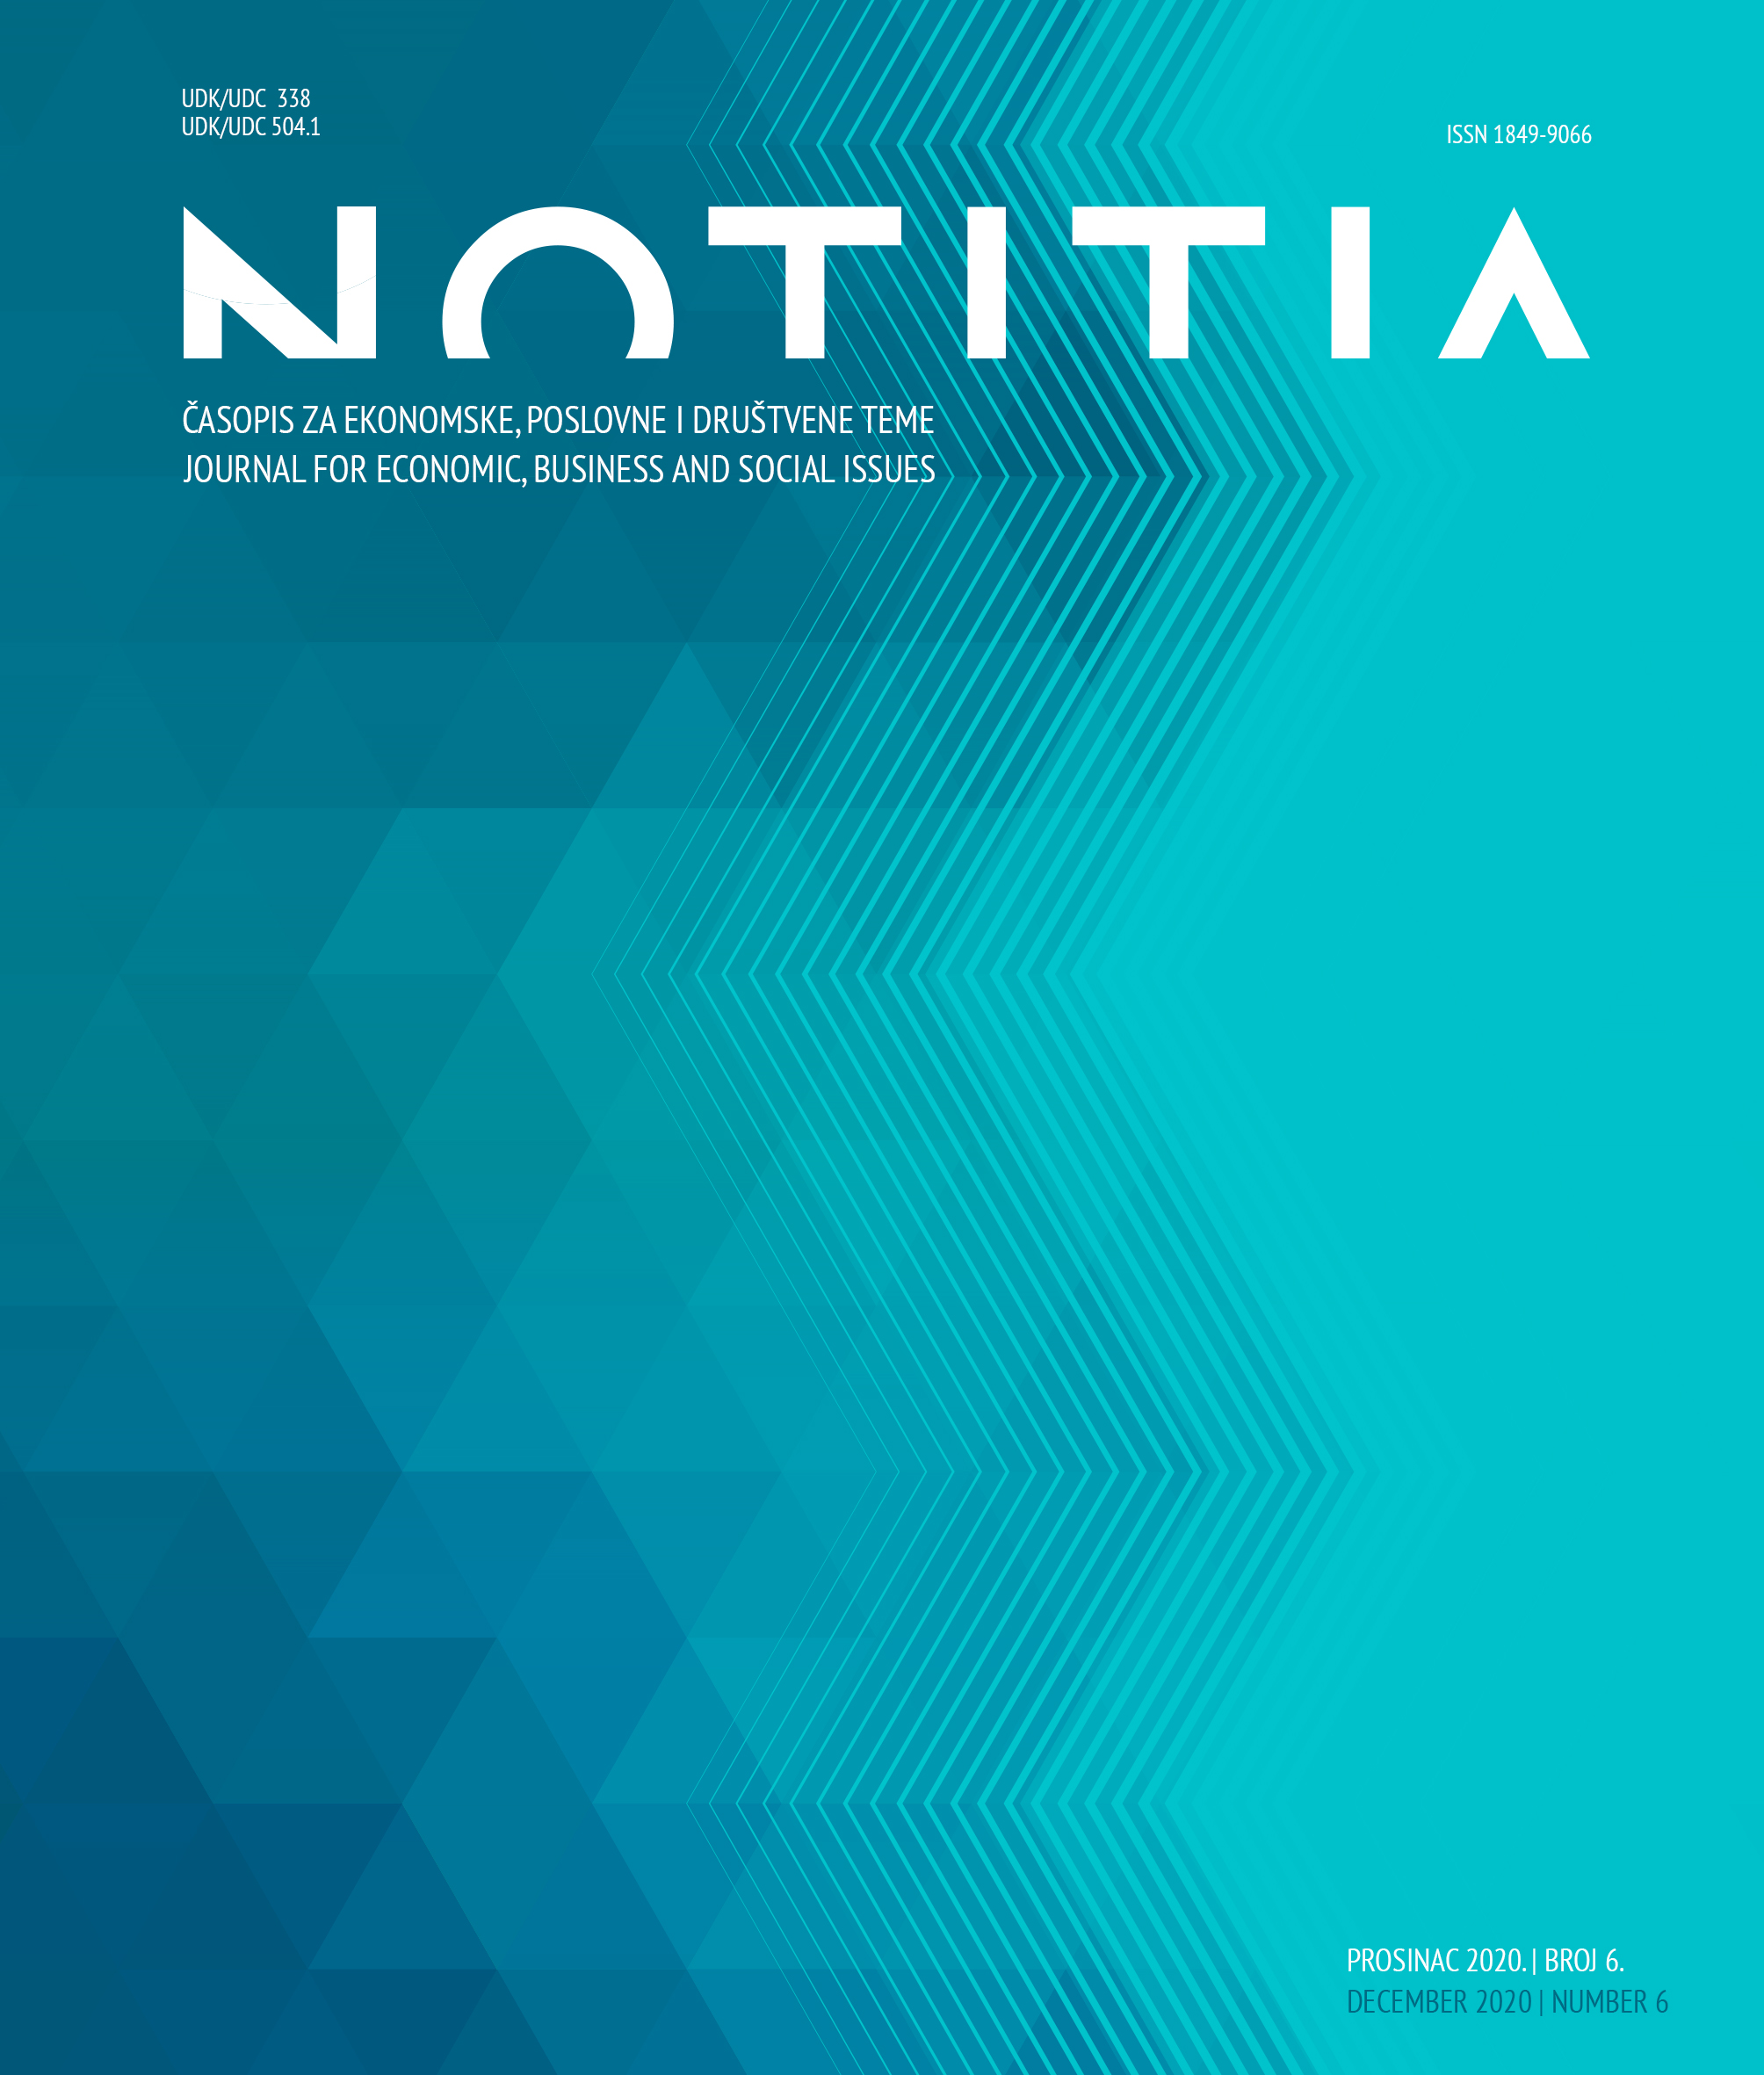 logo Notitia -časopis za ekonomske, poslovne i društvene teme